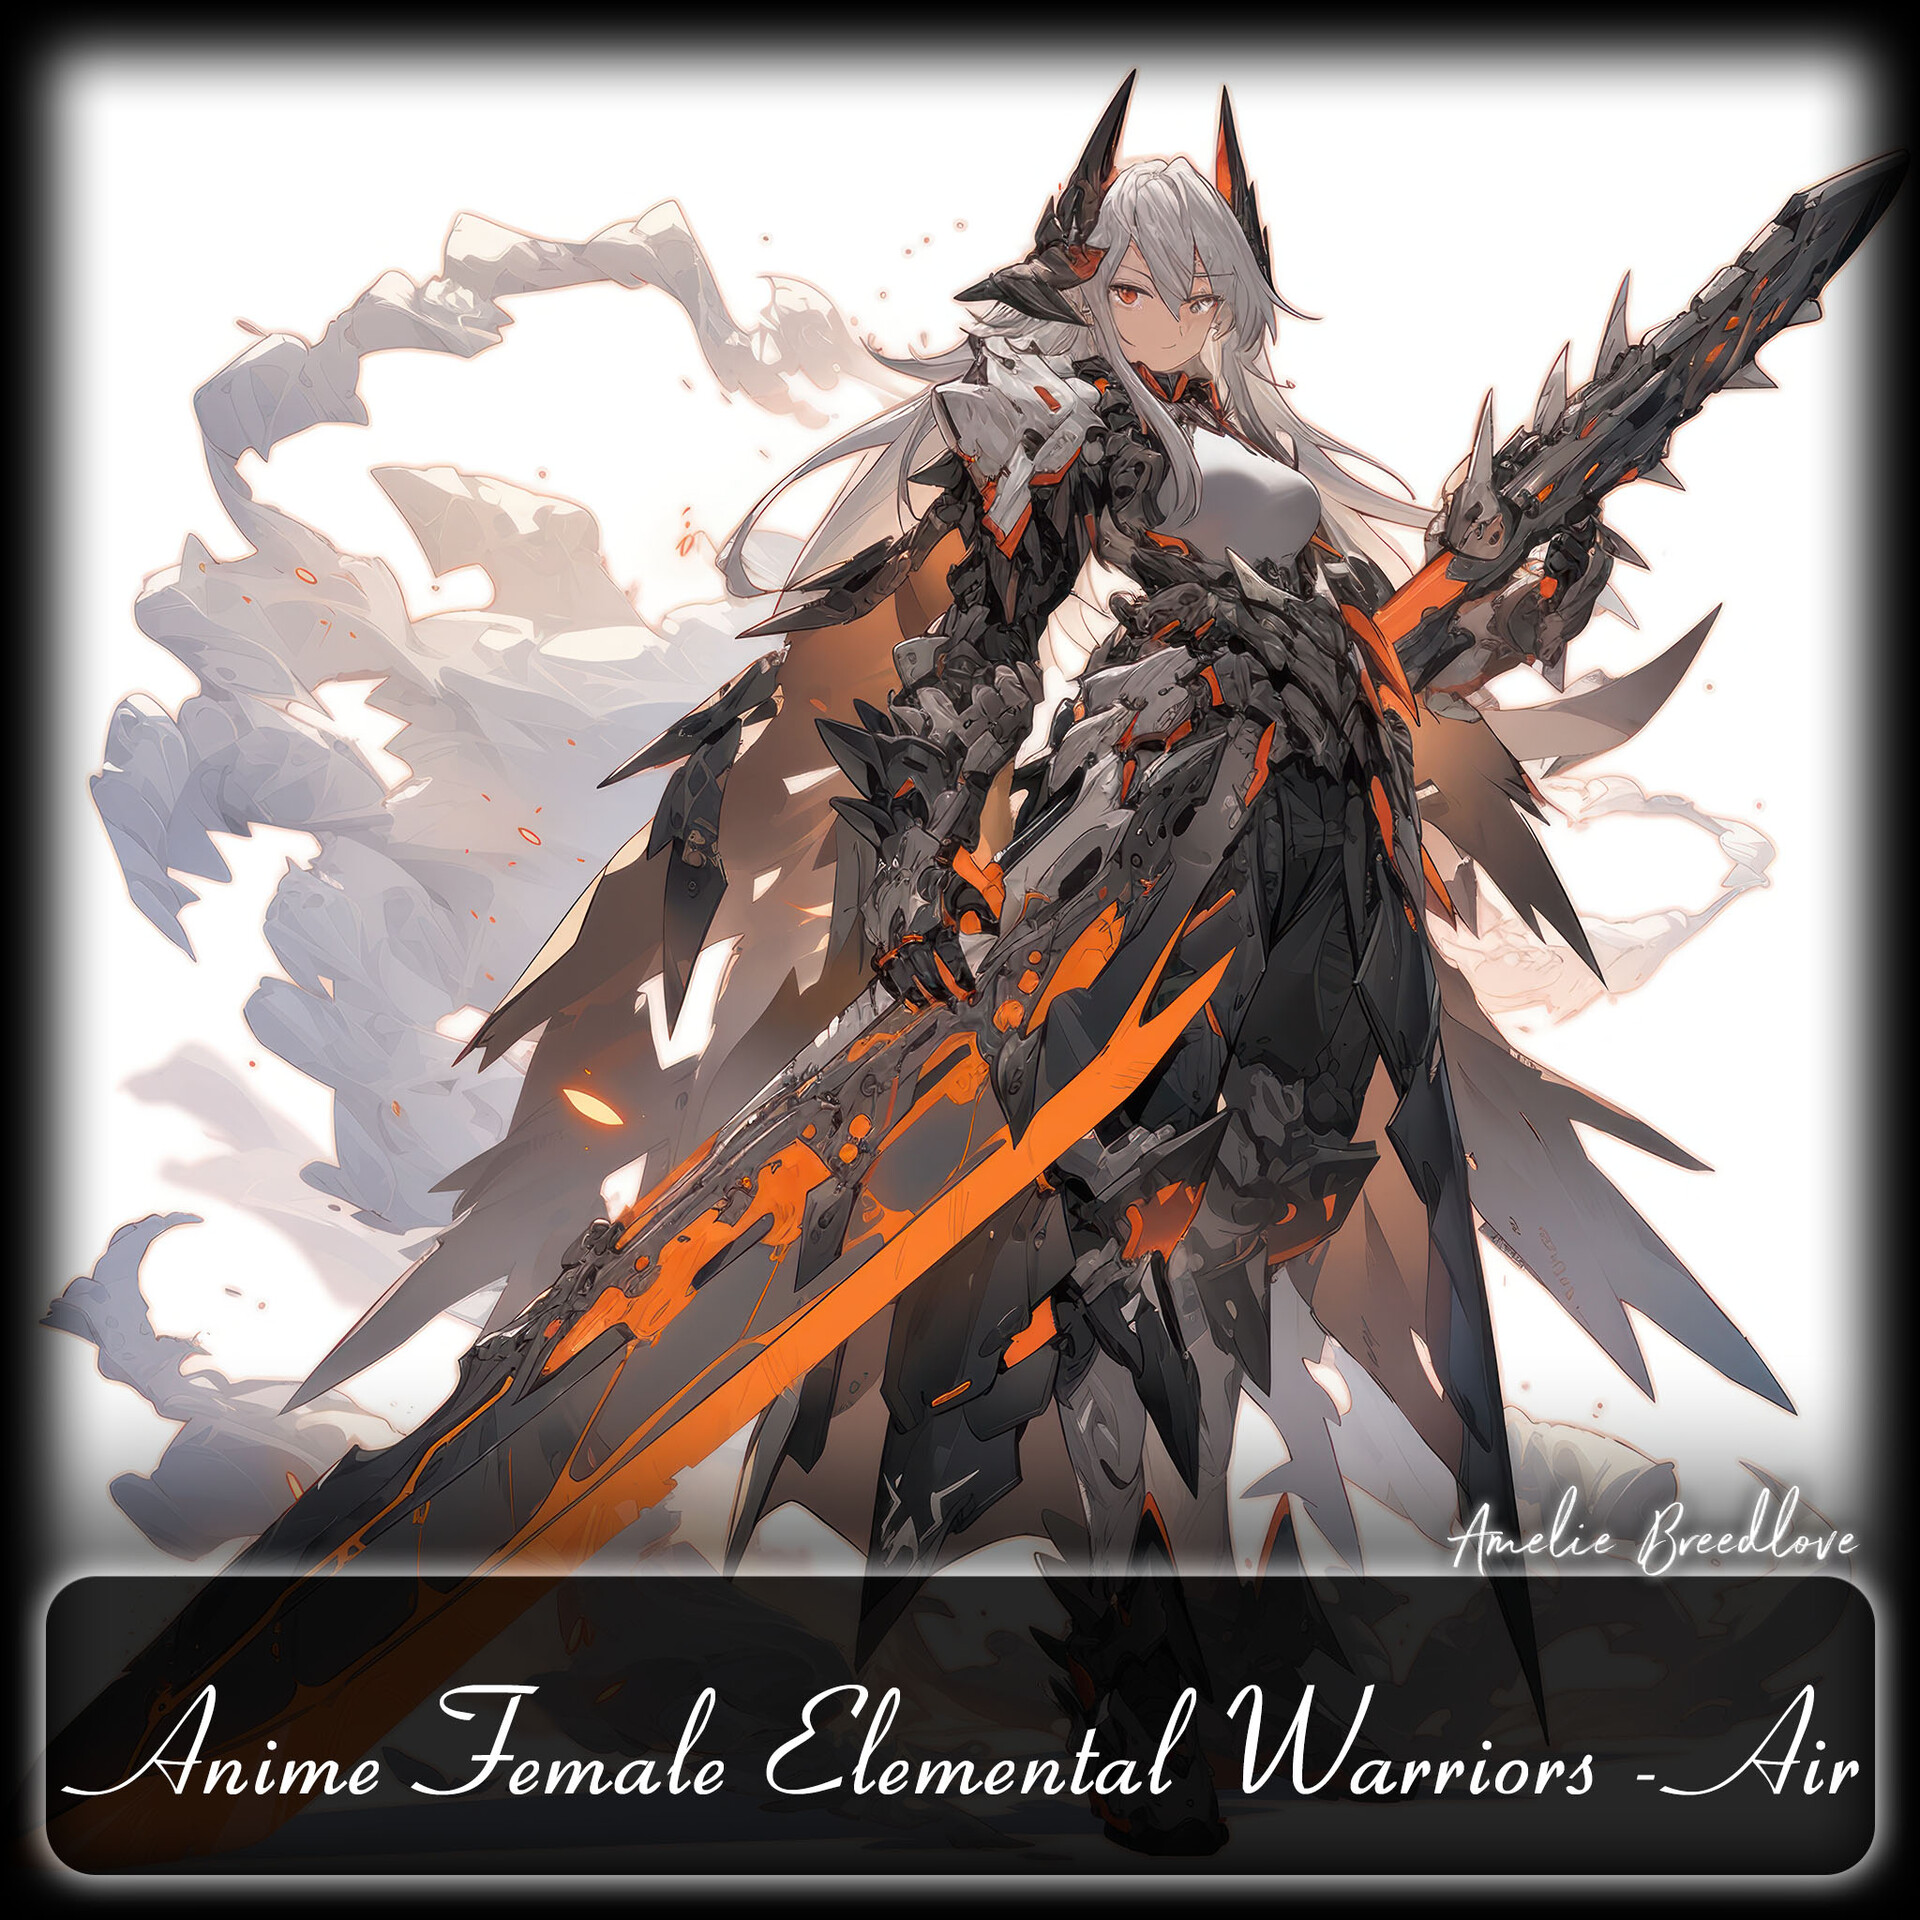 ArtStation - 200 Anime Female Elemental Warriors - Air (Full Body ...